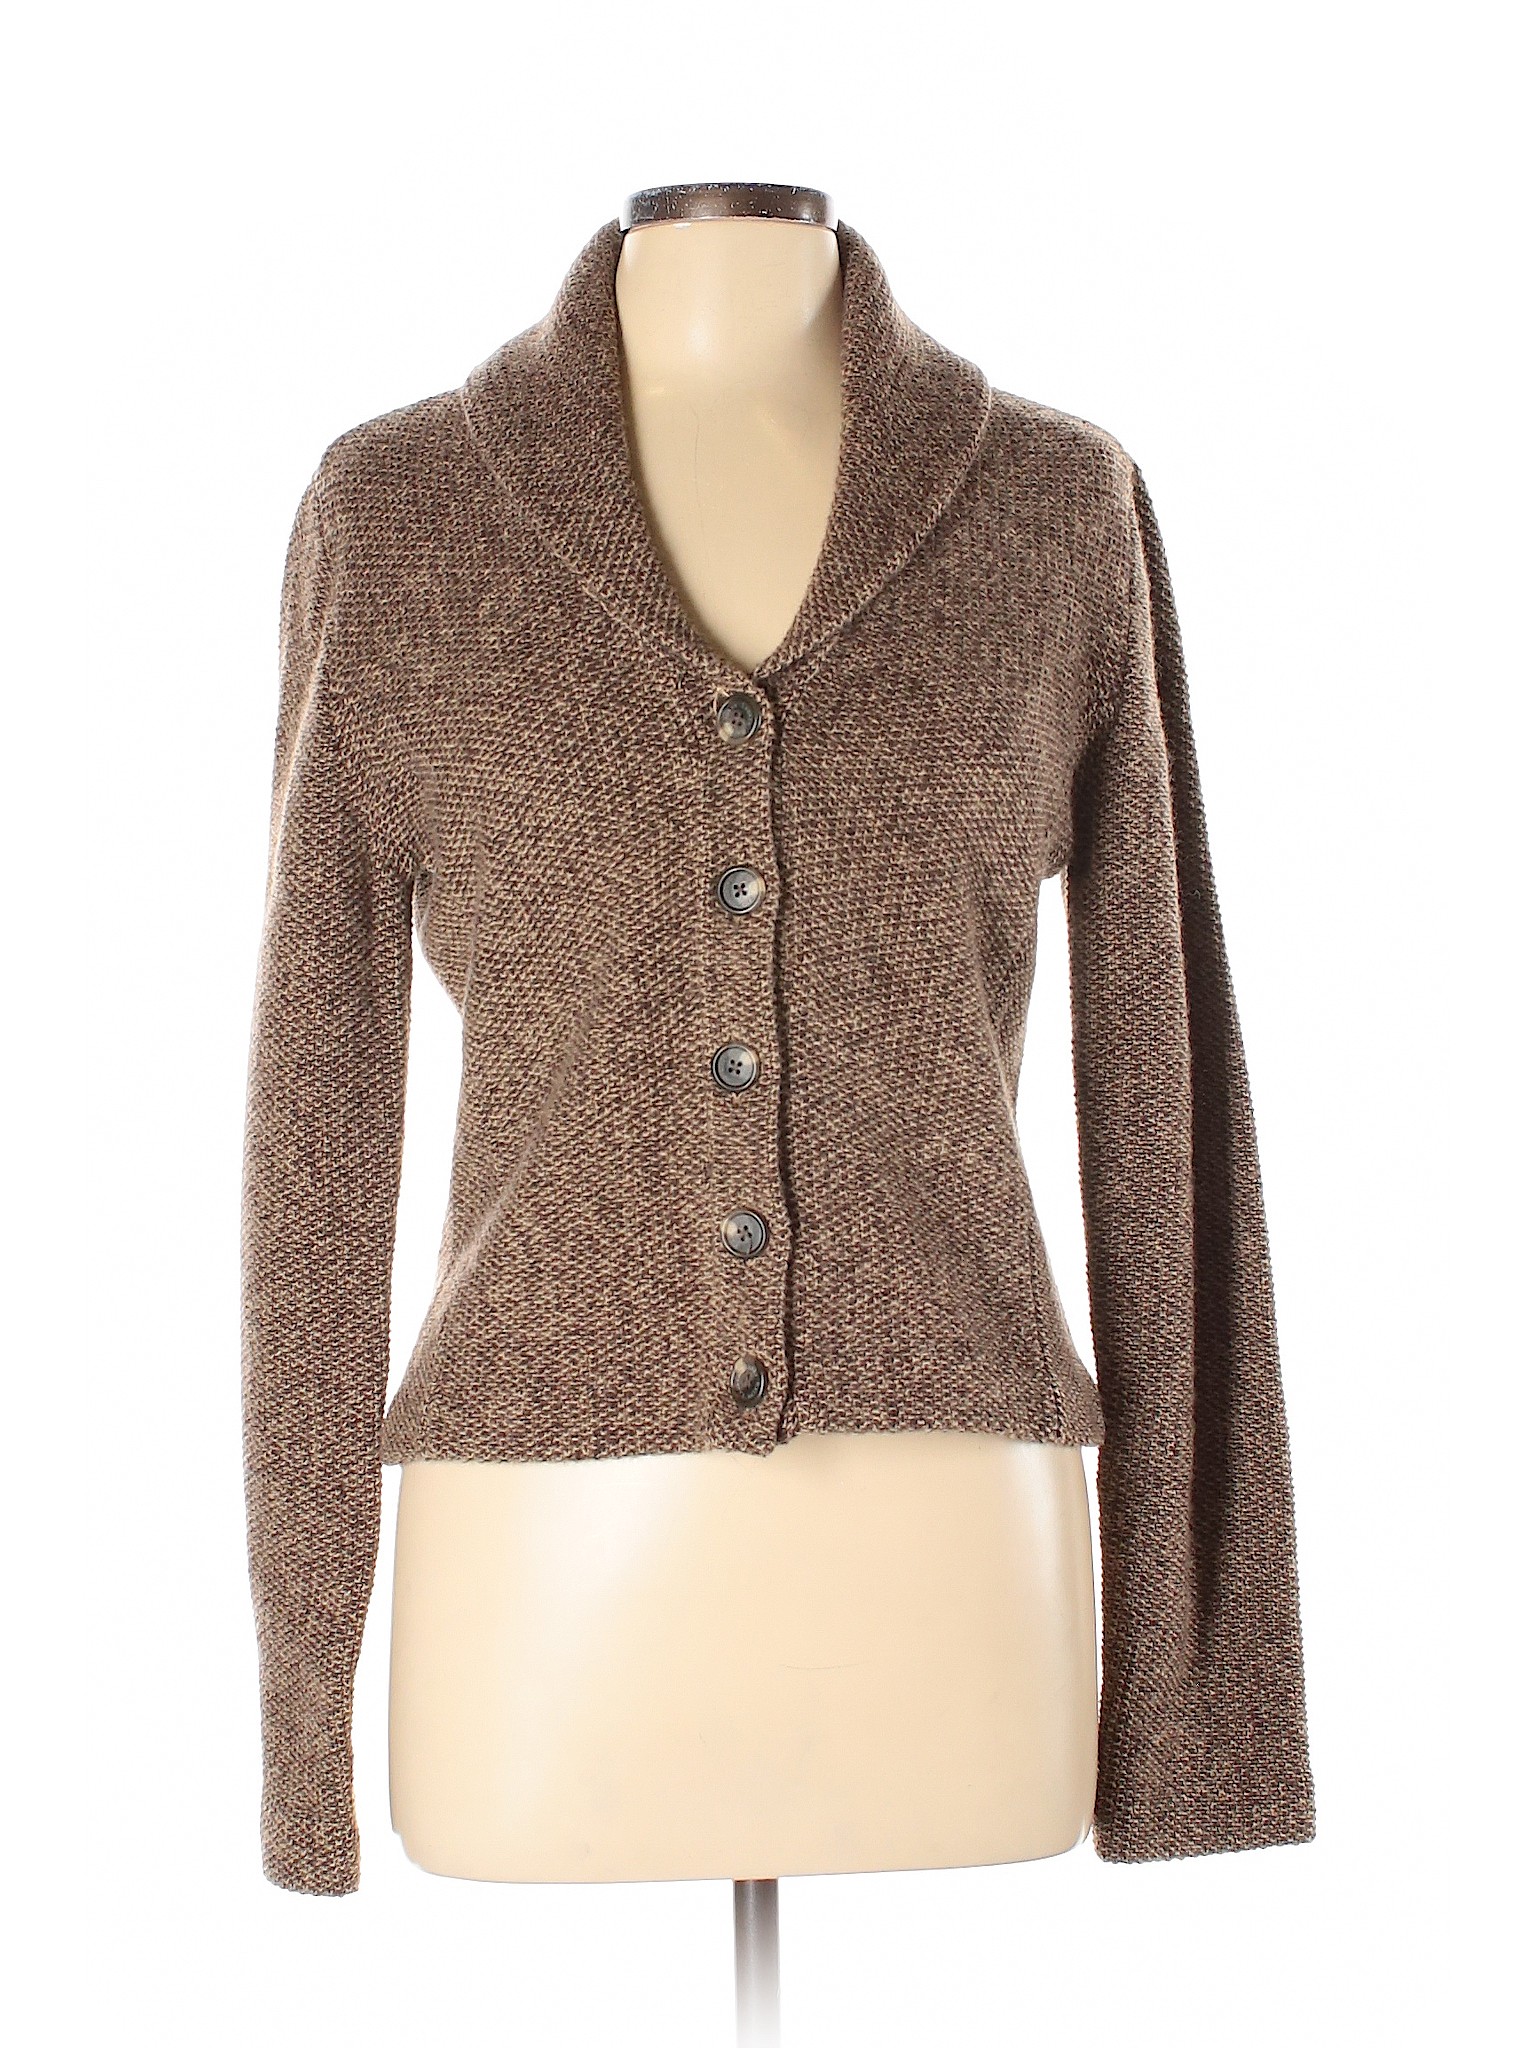 Lauren by Ralph Lauren Women Brown Wool Blazer L | eBay